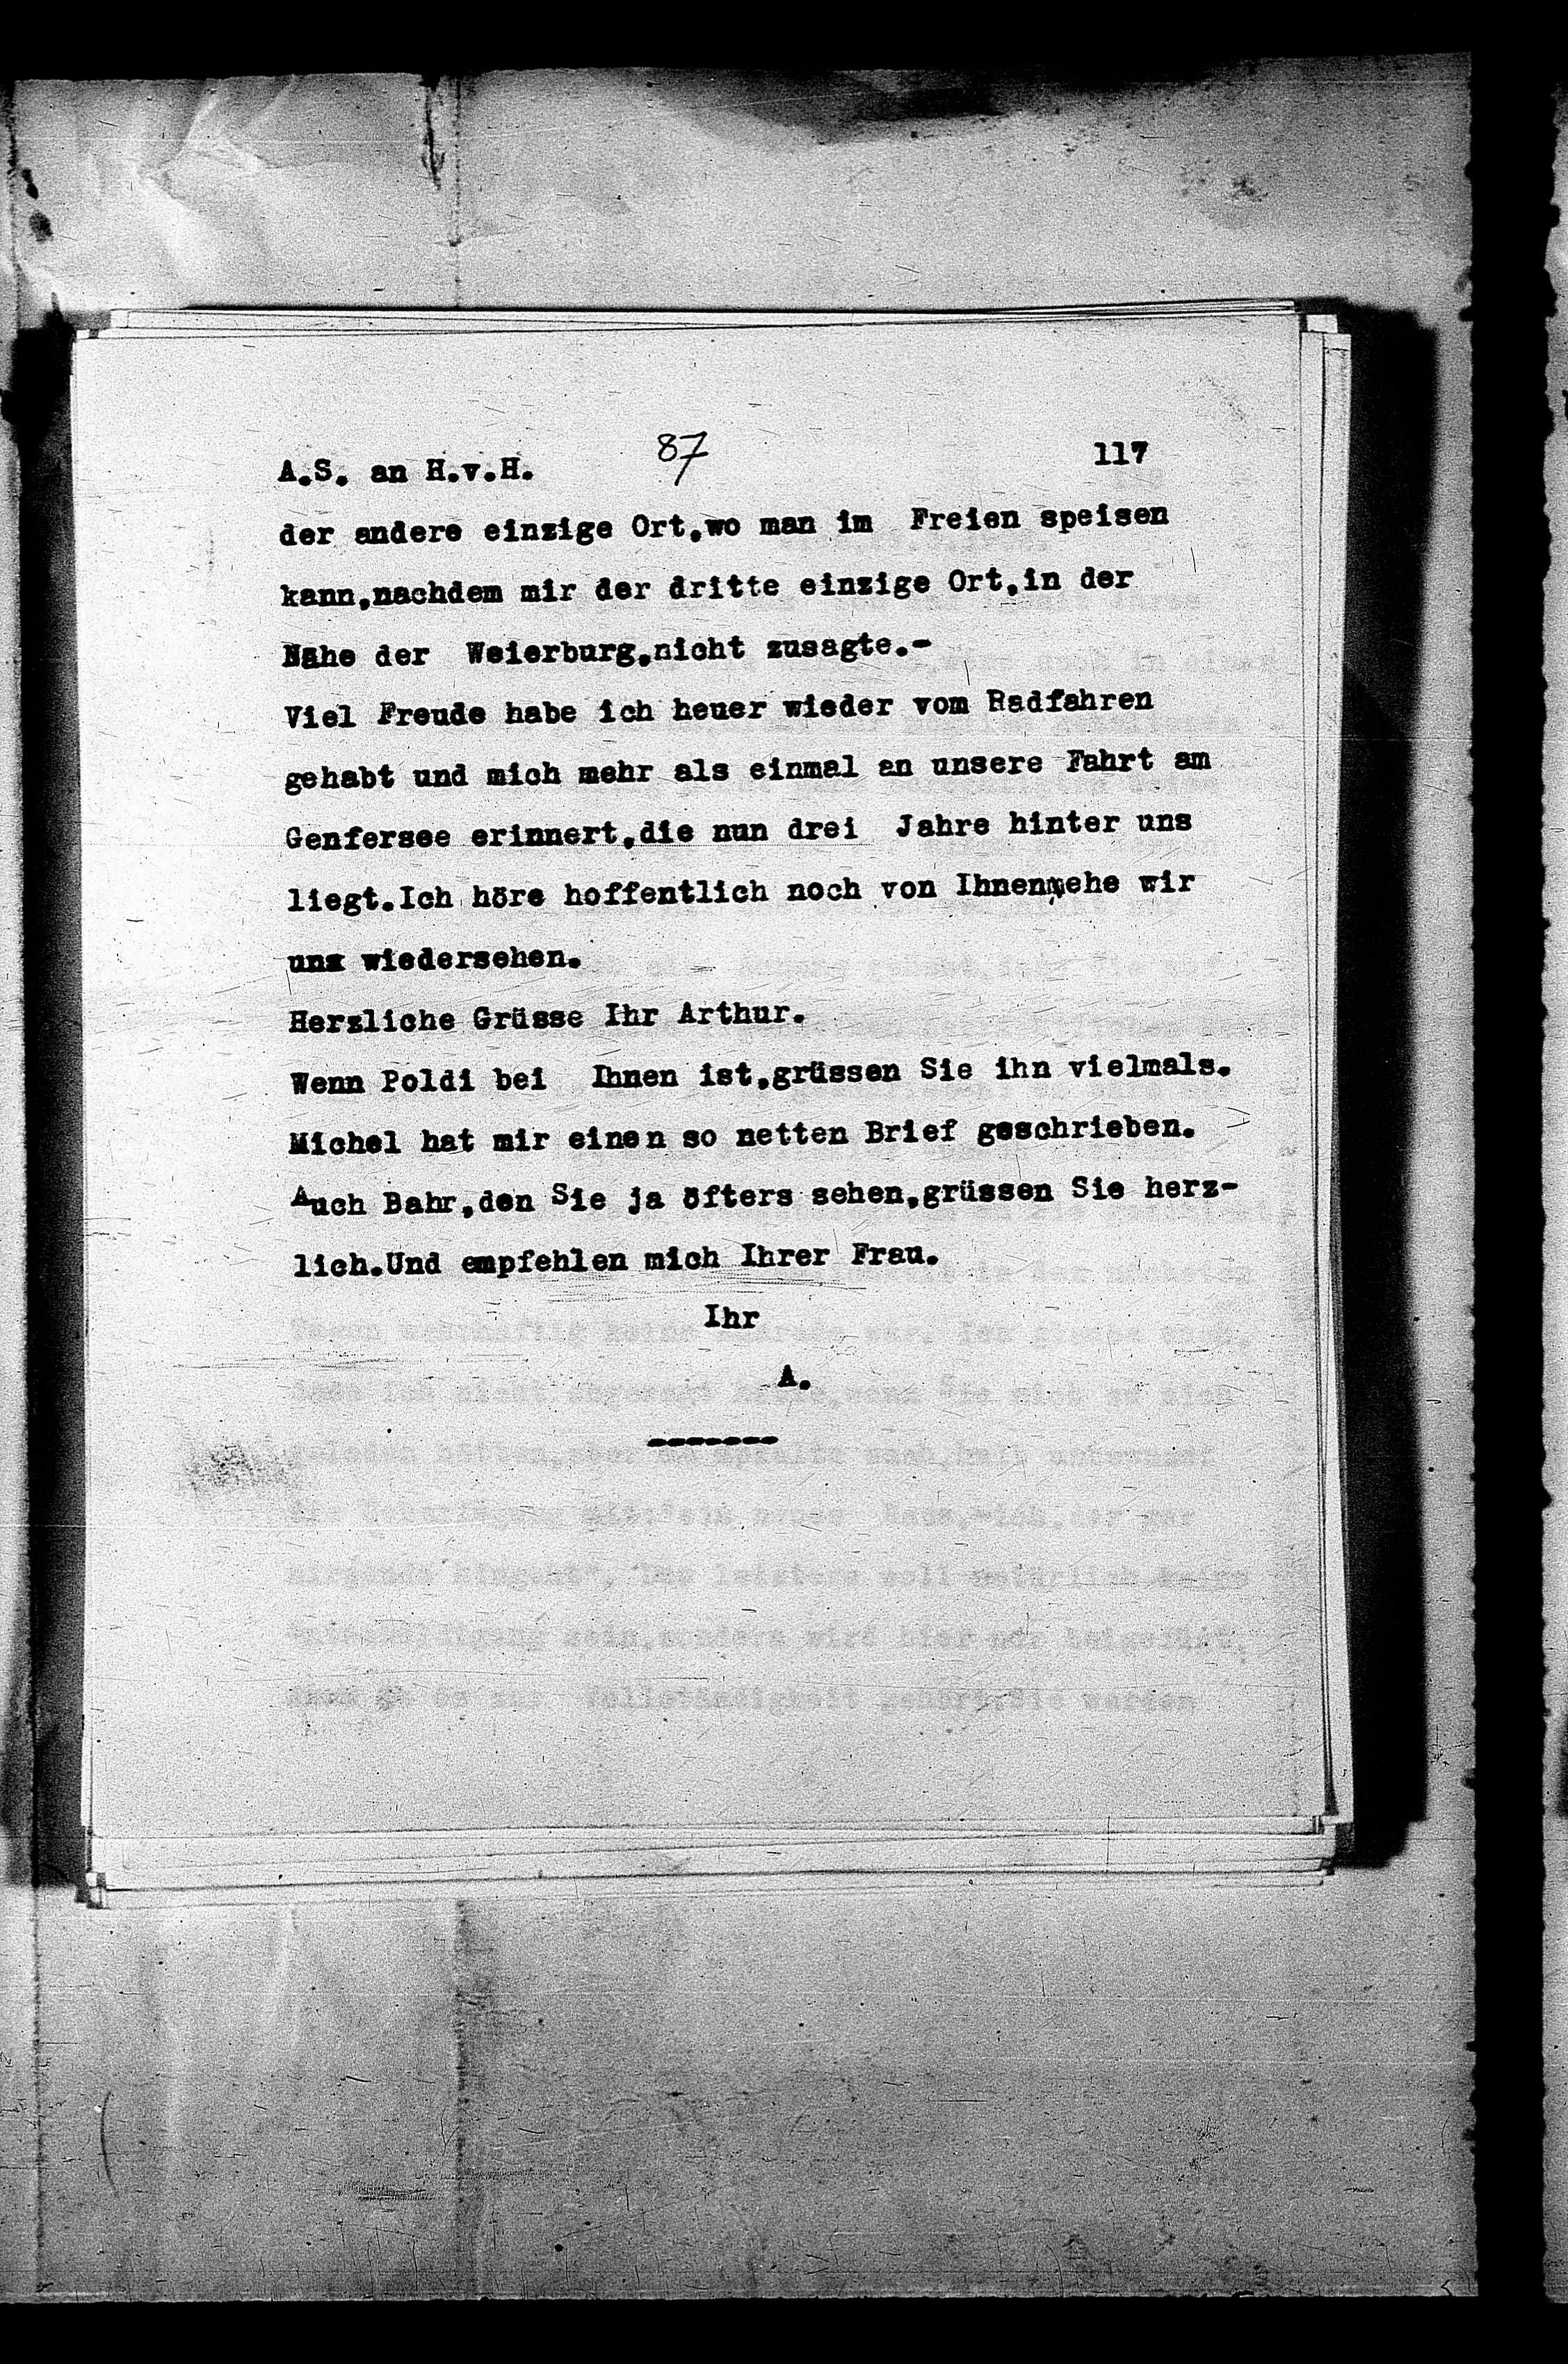 Vorschaubild für Hofmannsthal, Hugo von_AS an HvH Abschrift, HvH an AS, Originale (Mikrofilm 38), Seite 121